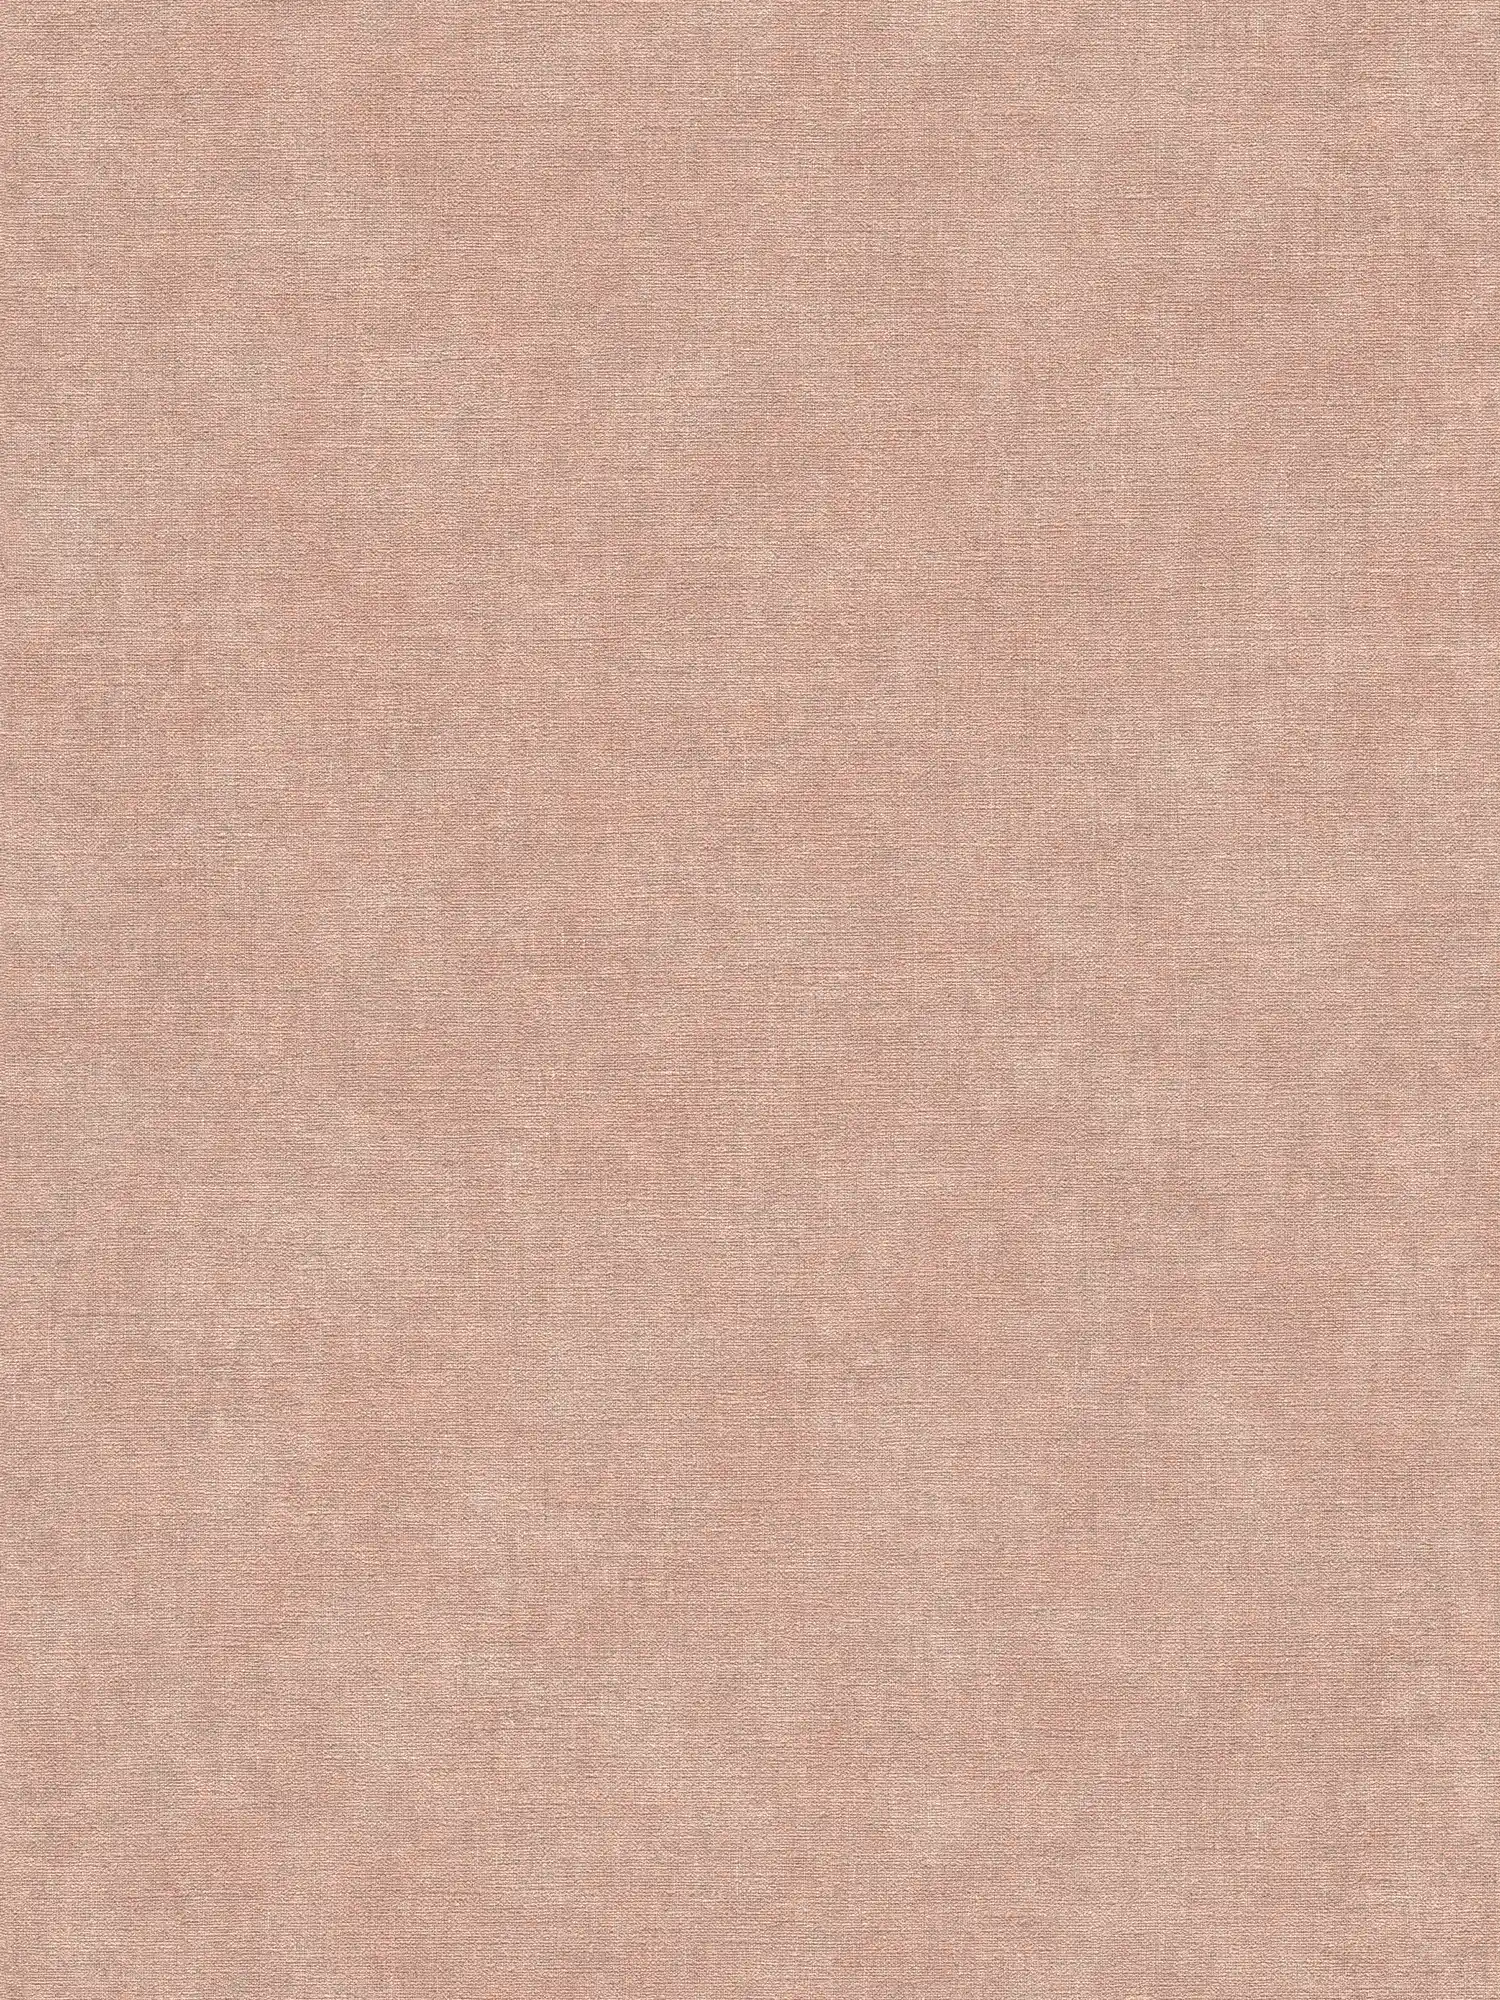         Einfarbige Vliestapete in sanfter Putzoptik – Rosa, Grau
    